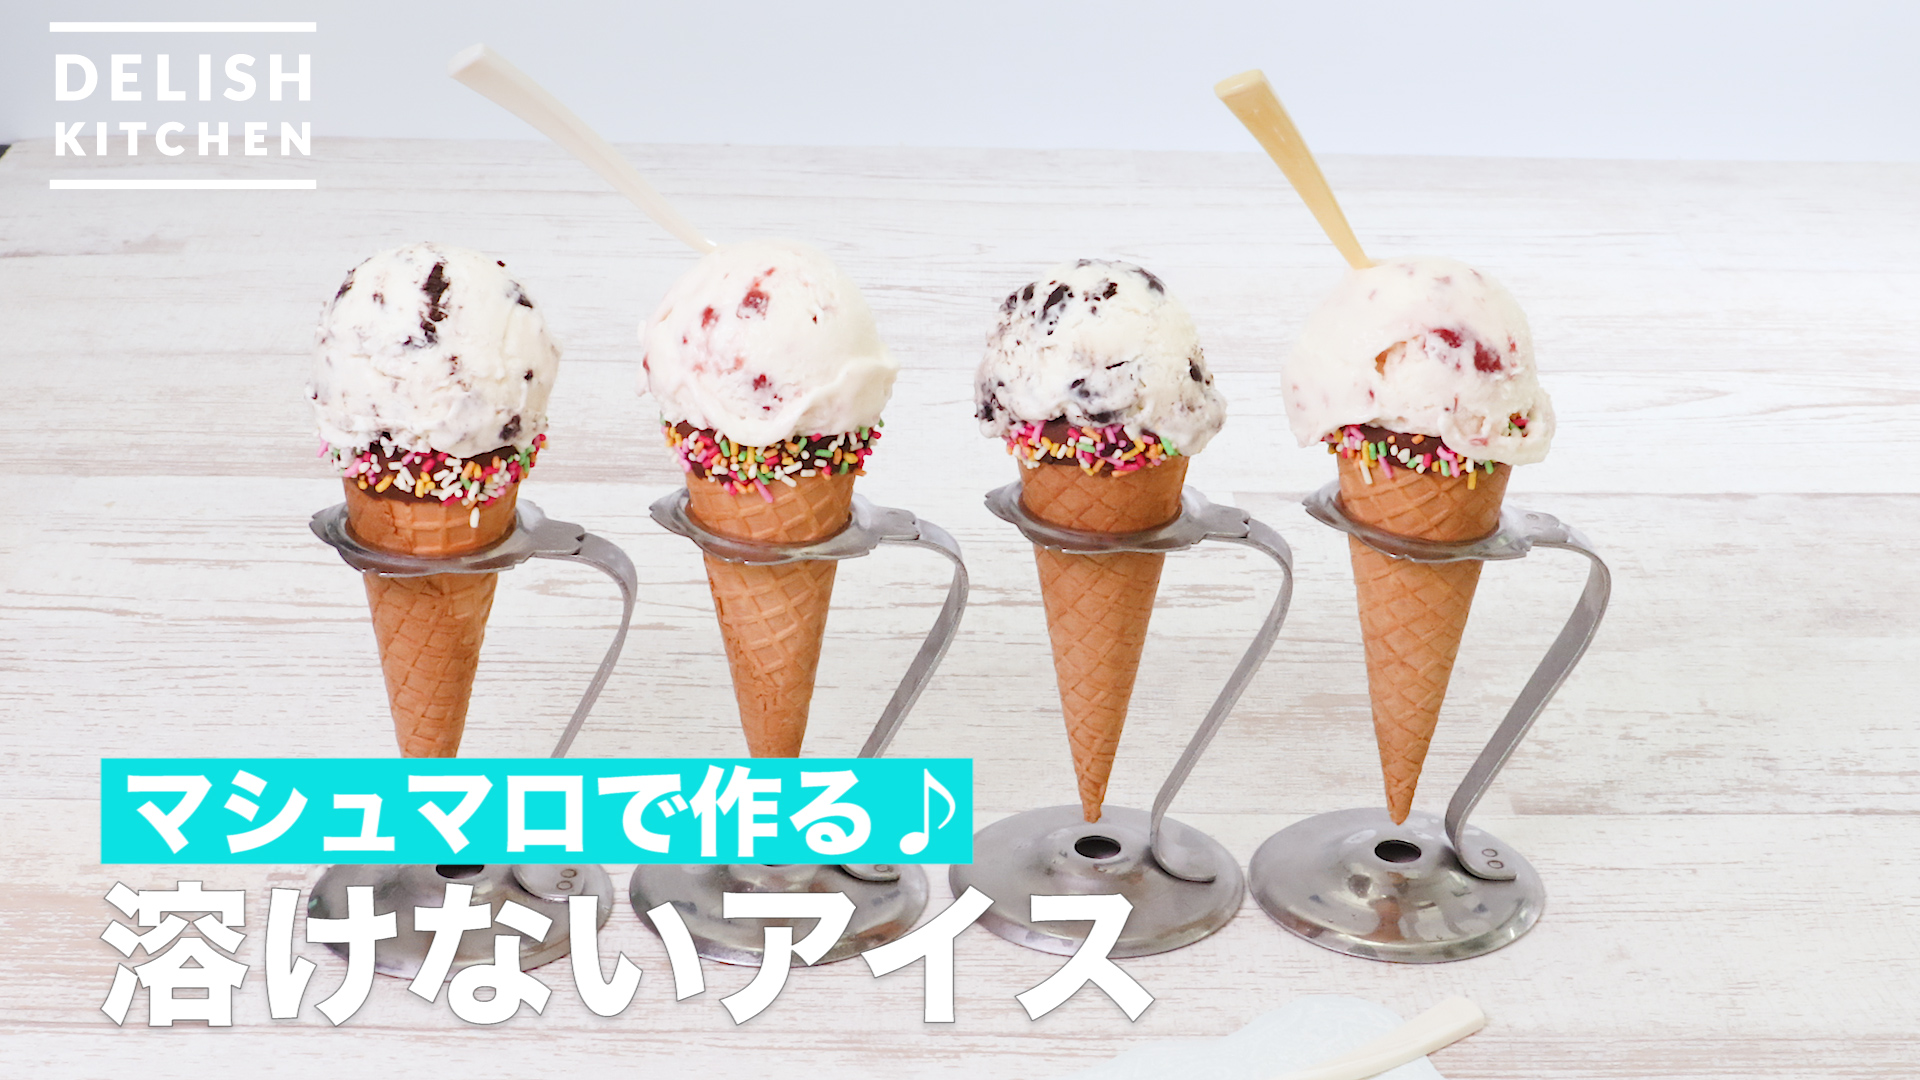 マシュマロで作る 溶けないアイス How To Make Undissolved Ice Delish Kitchen デリッシュキッチン Yahoo Japan